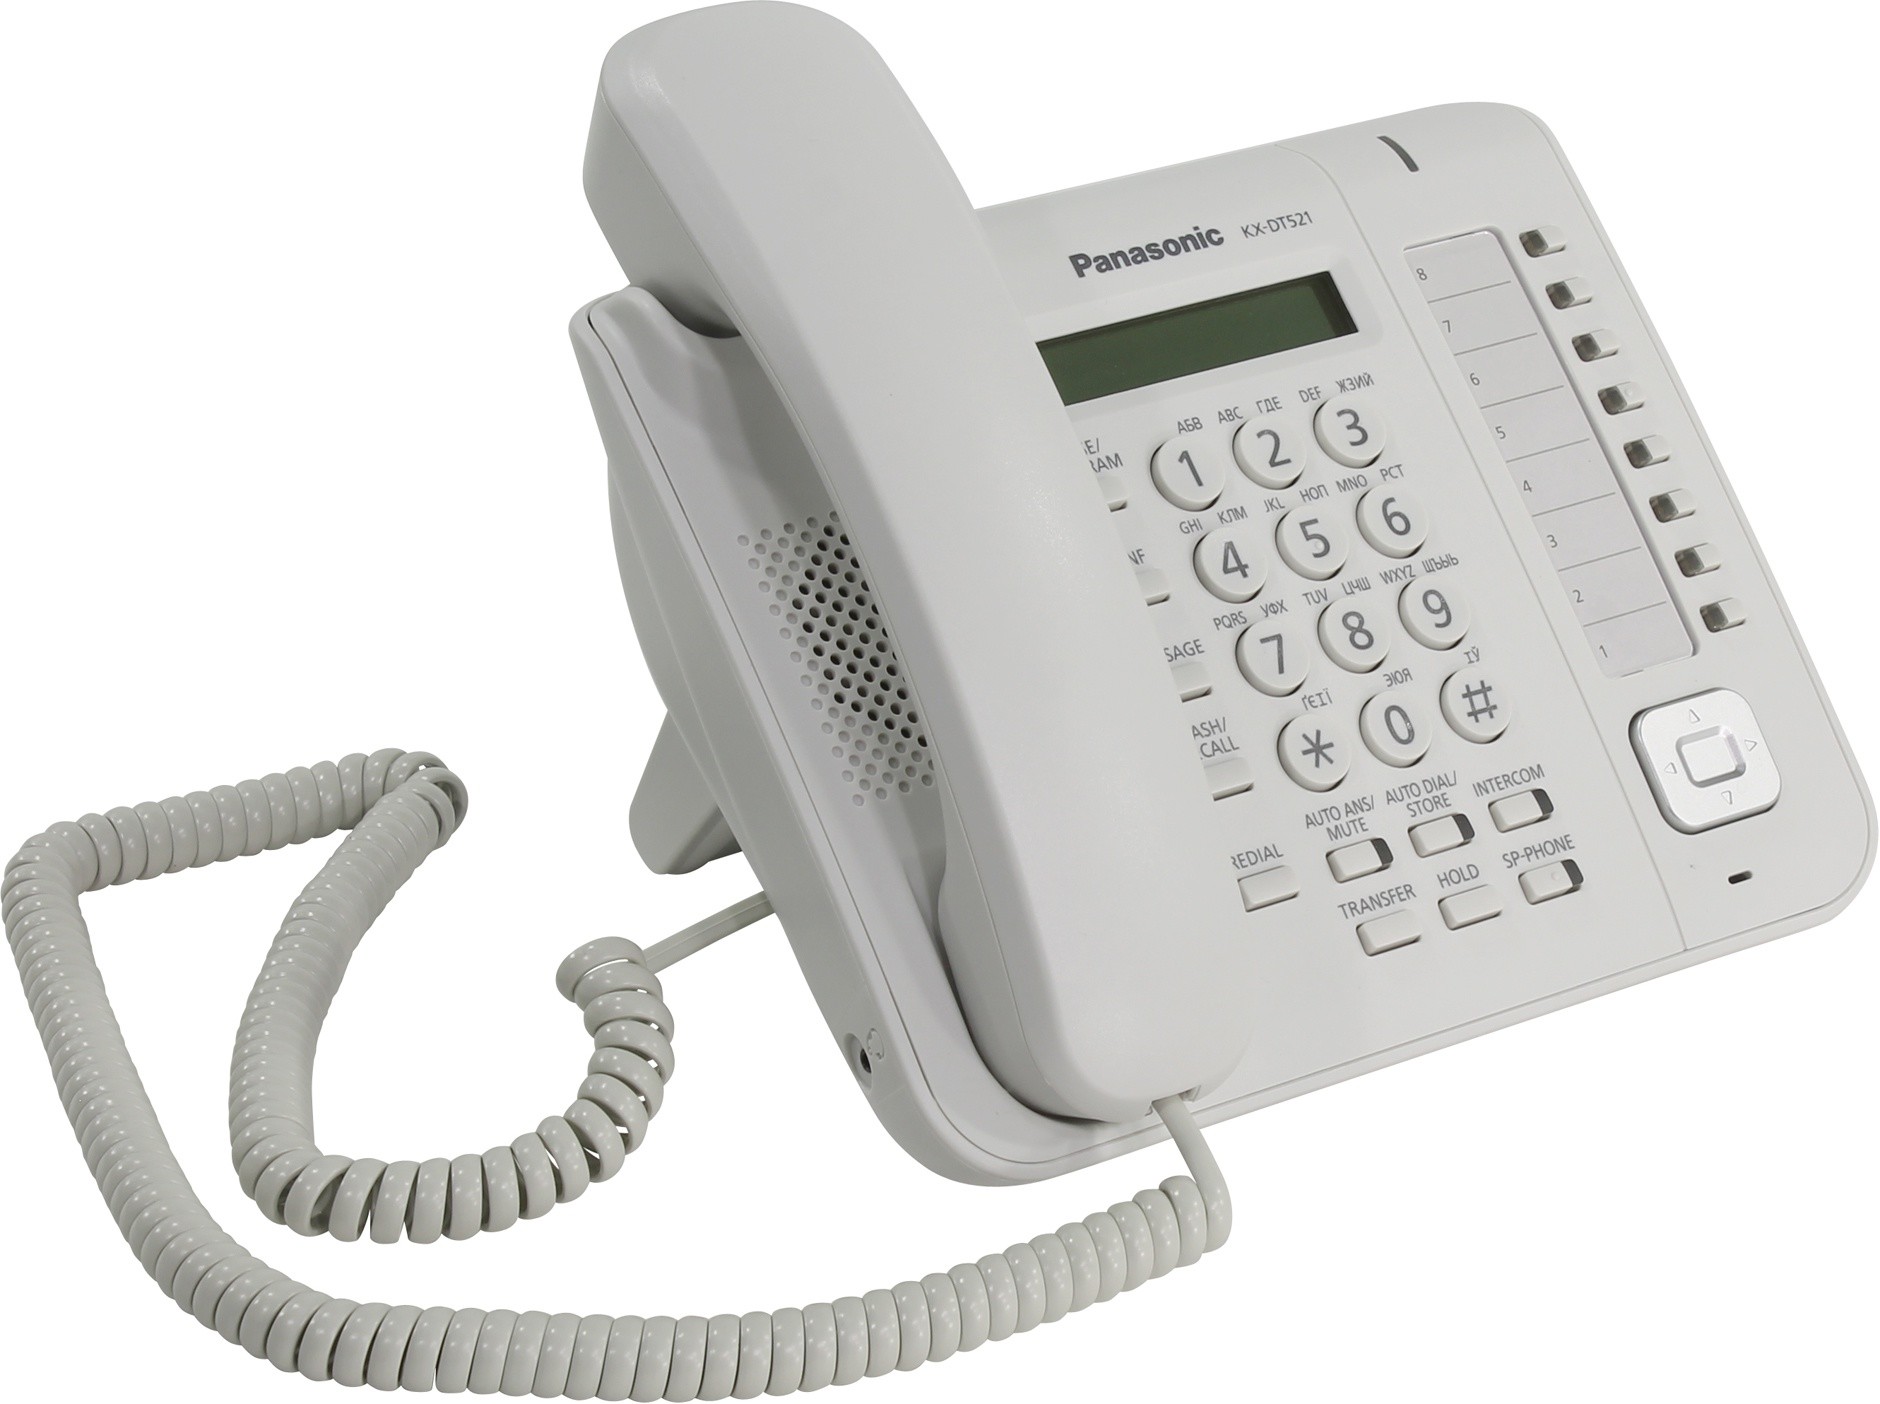 Уцененный товар телефон Системный Panasonic KX-DT521RU-W (белый) [ KX-DT521RU-W ] (вскрыта упаковка, заполнен гарю талон, ЖК-дисплей (1 строка),спикер